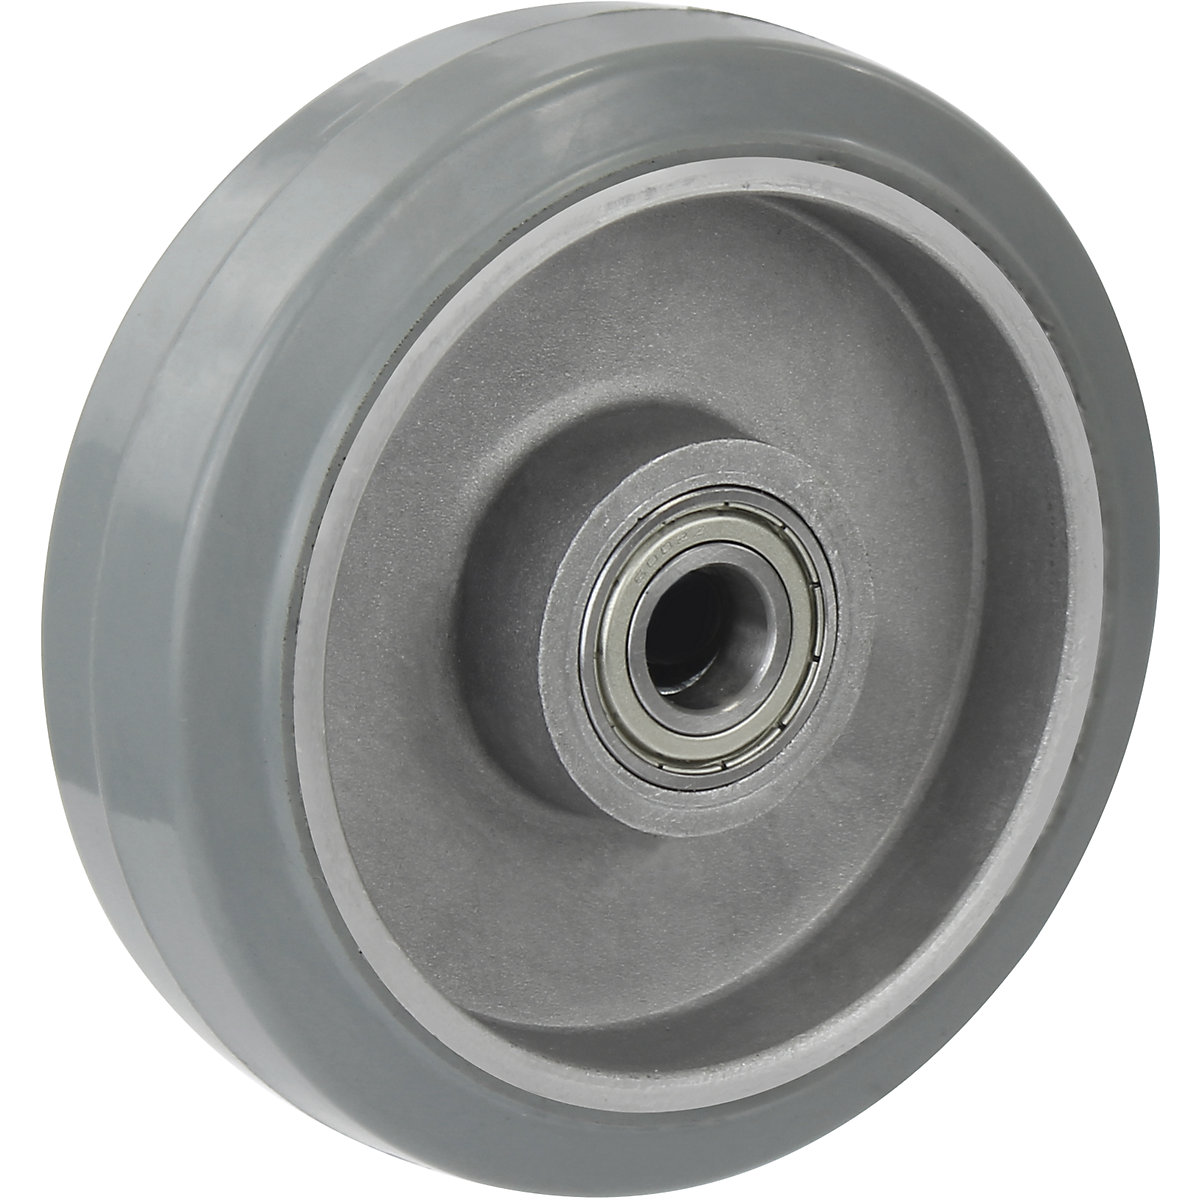 Neumático de caucho macizo elástico, gris – Proroll